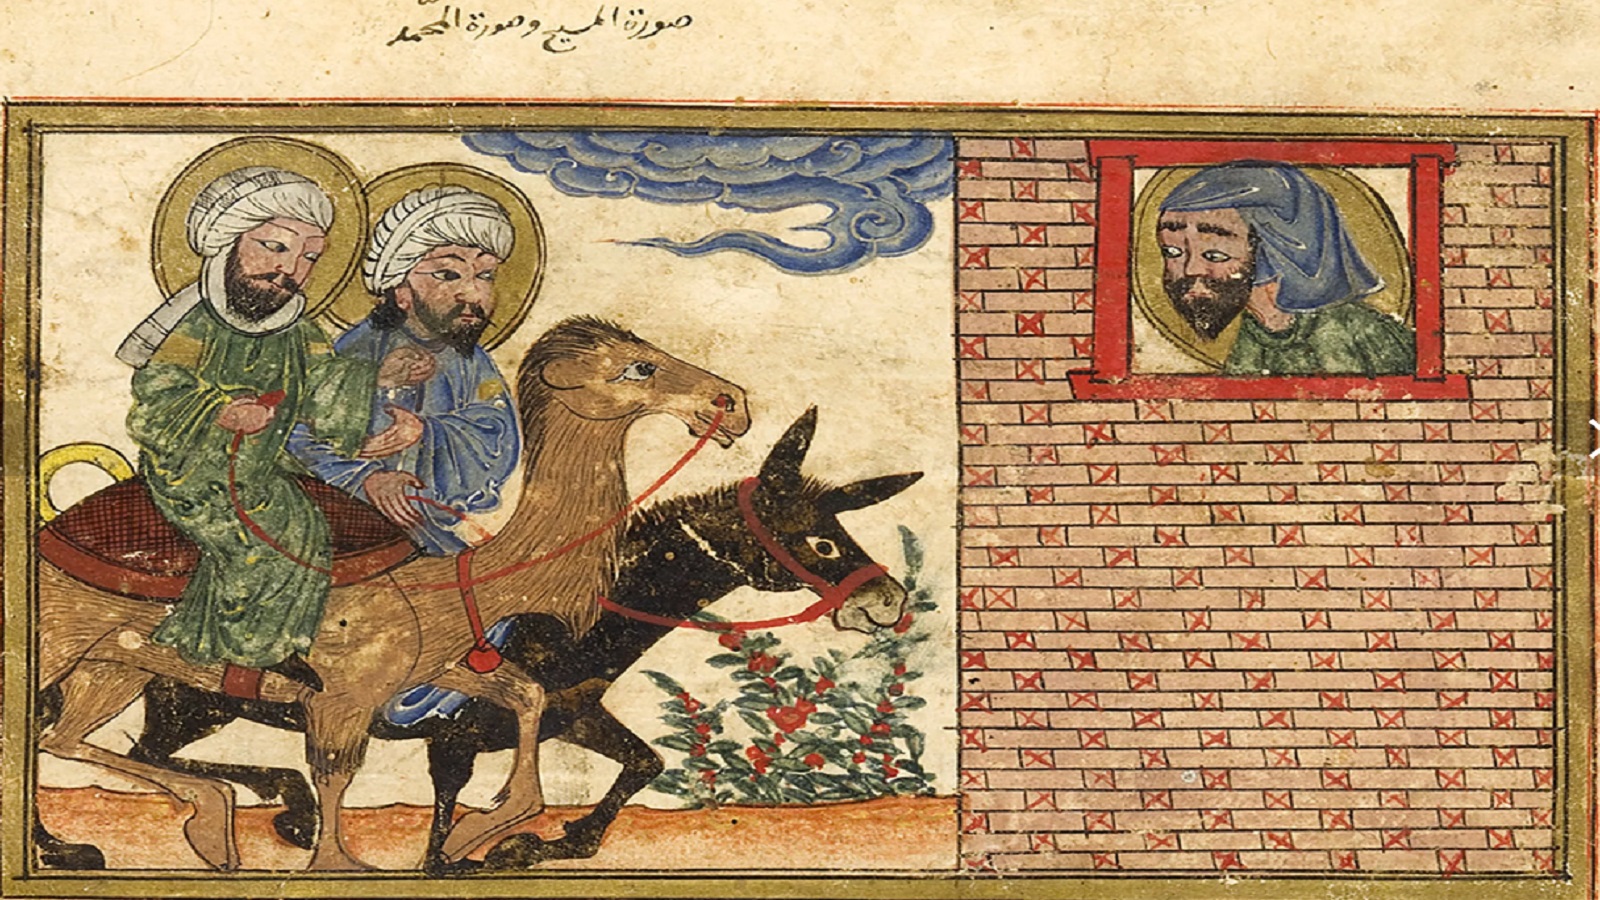 إشعيا محدّقاً في محمد وعيسى، "الآثار الباقية عن القرون الخالية"، 1307، مكتبة جامعة أدنبره.